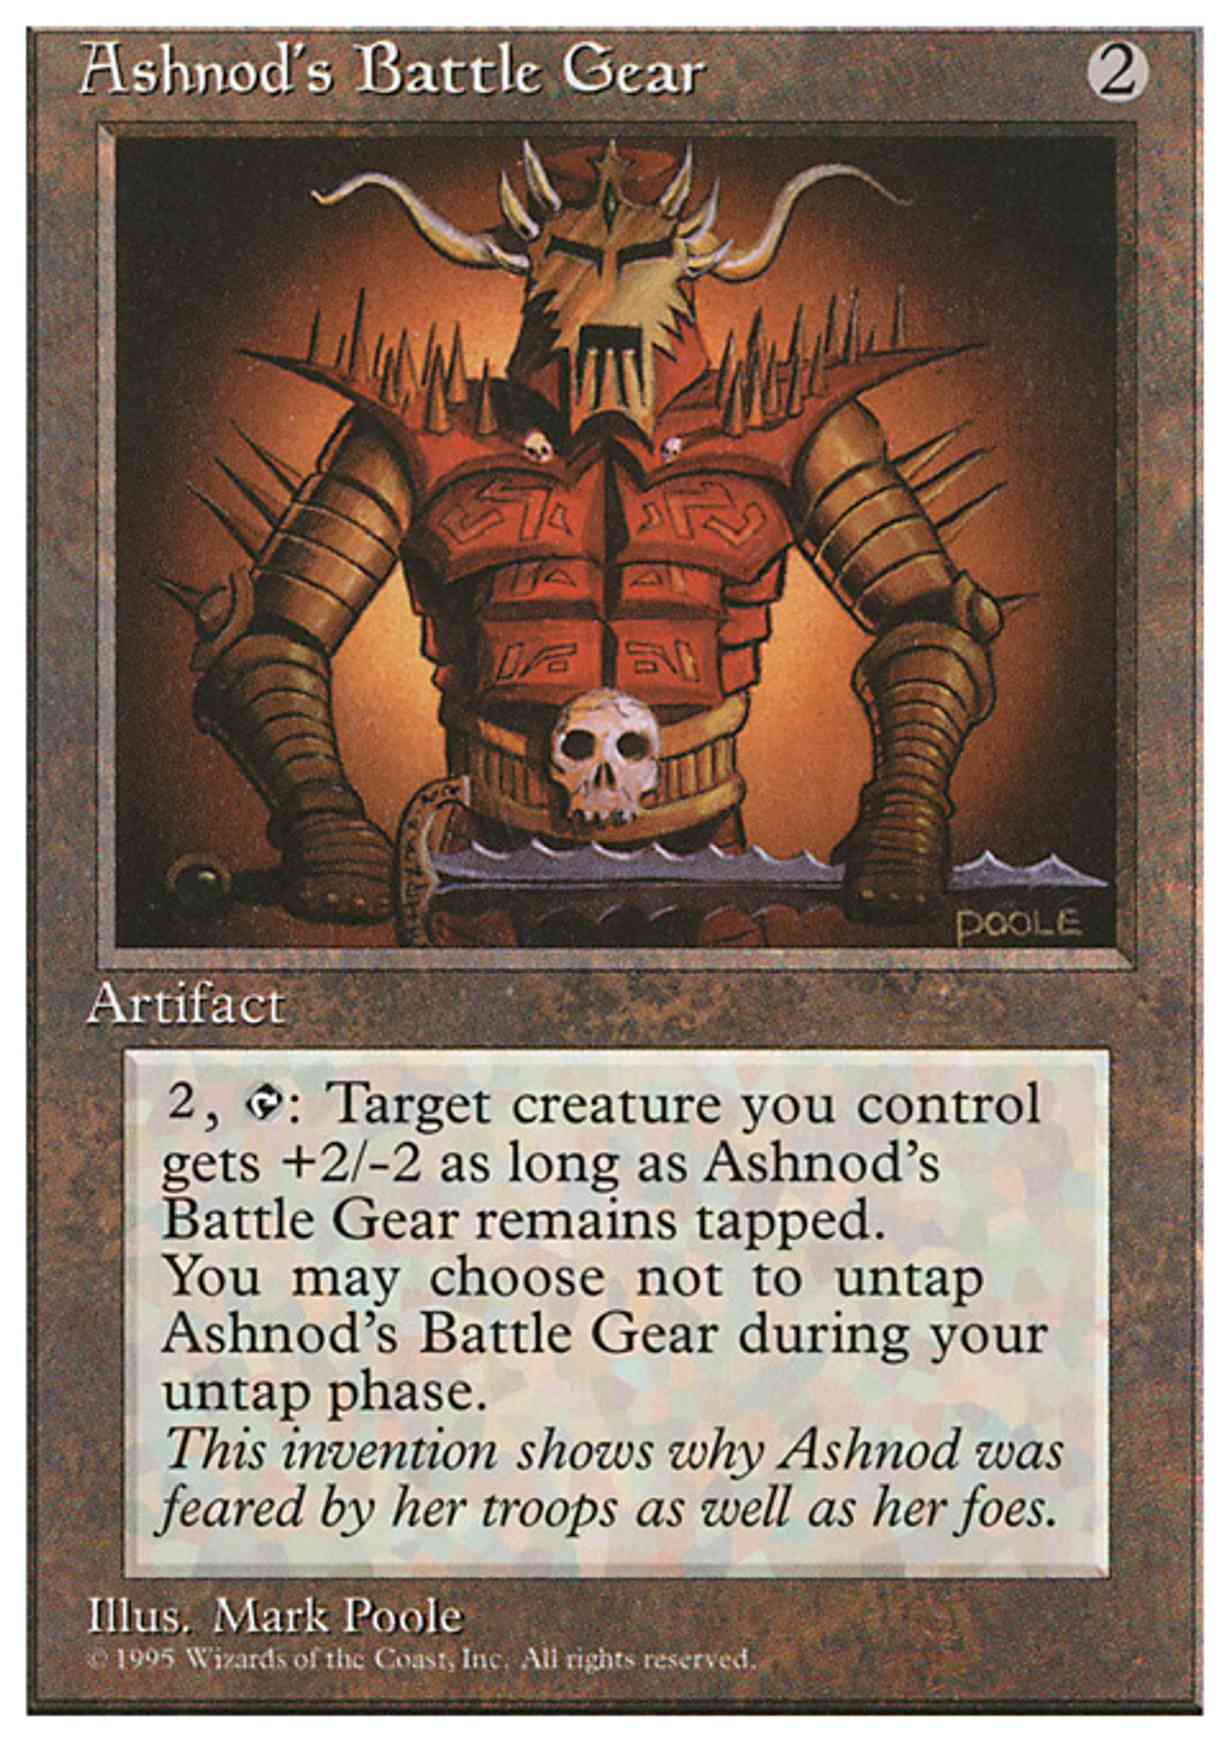 Ashnod's Battle Gear magic card front